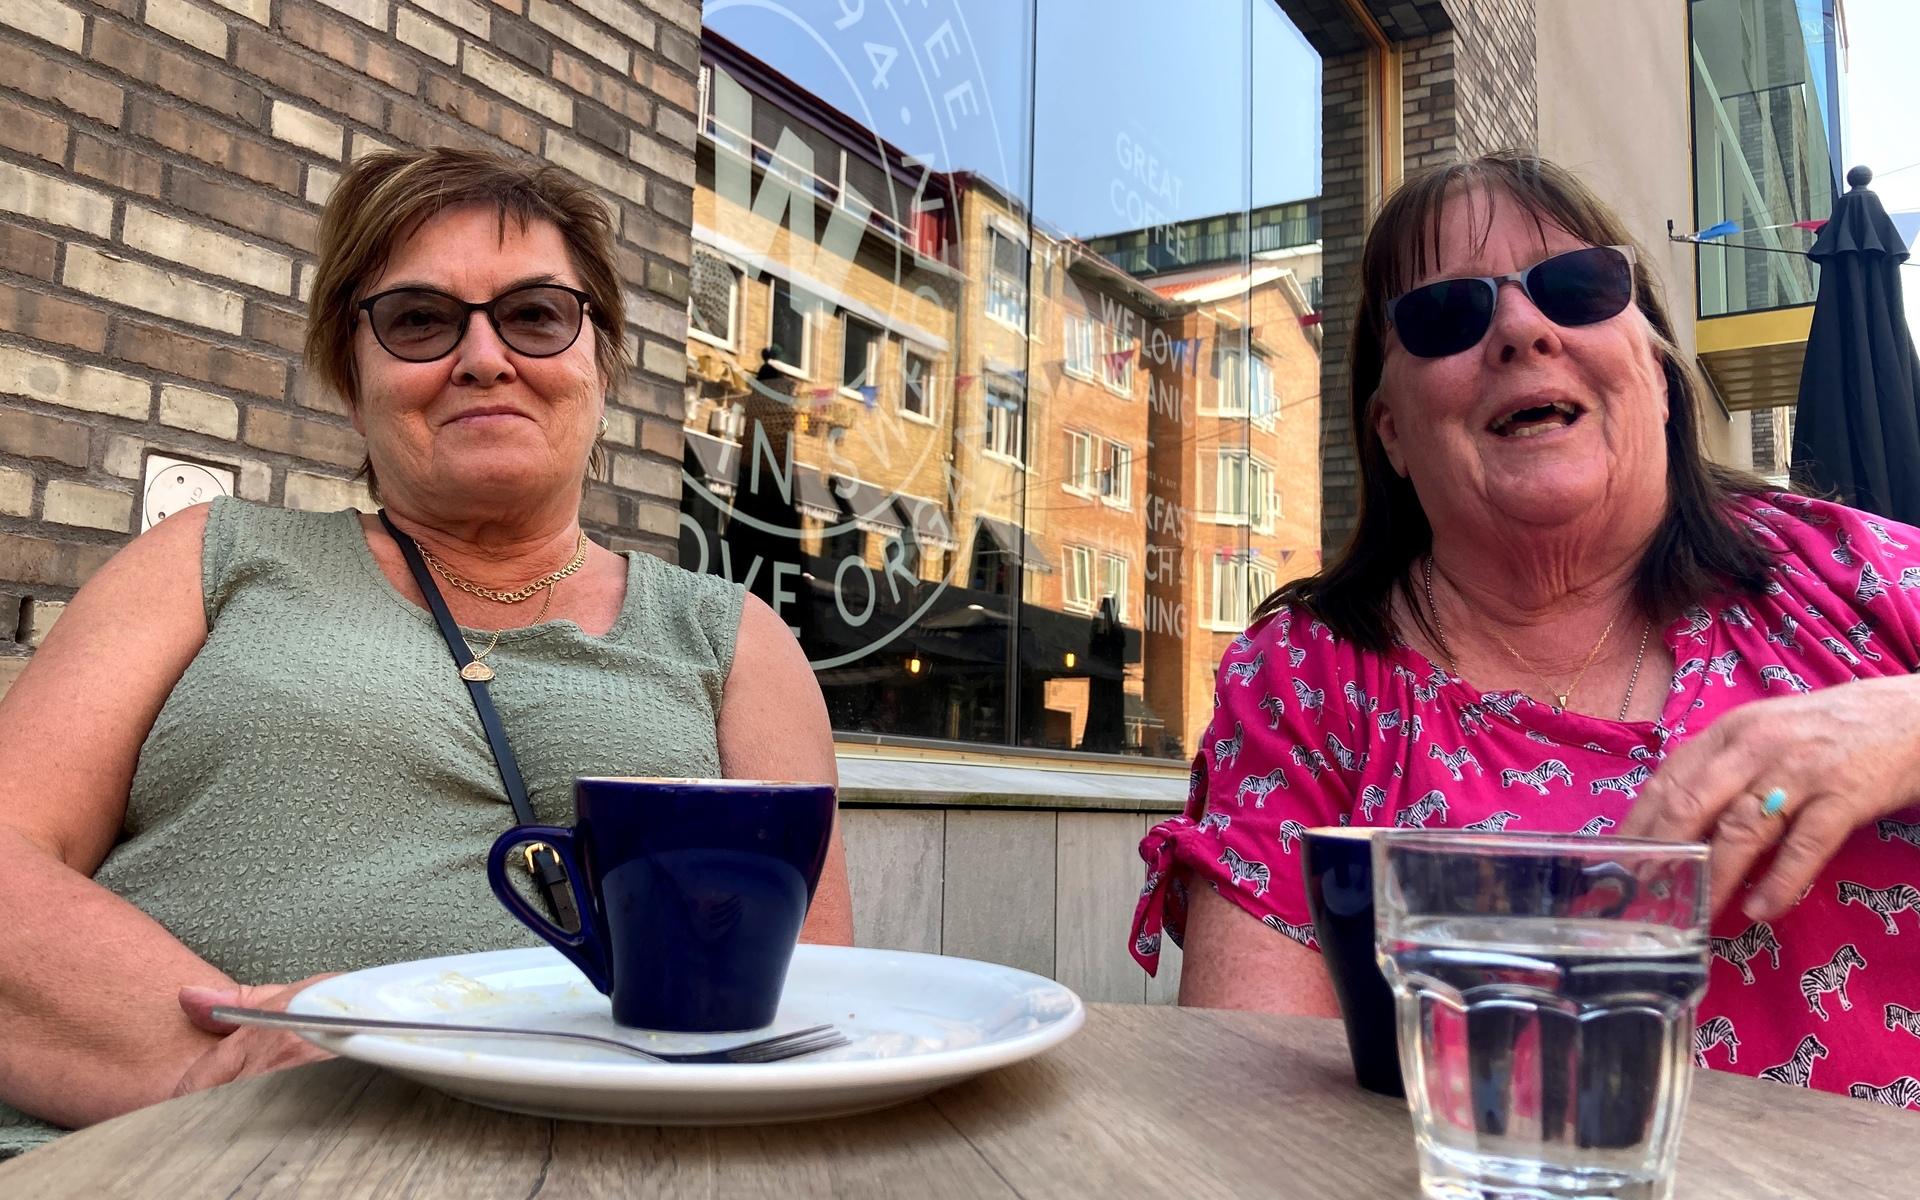 Kristina Grönlund och Inger Hellberg kom inte överens om huruvida värmen var härlig eller inte. ”Jag älskar sol och värme. Men hon kan ju inte sitta ensam härinne i skuggan”, säger Kristina och skrattar högt.